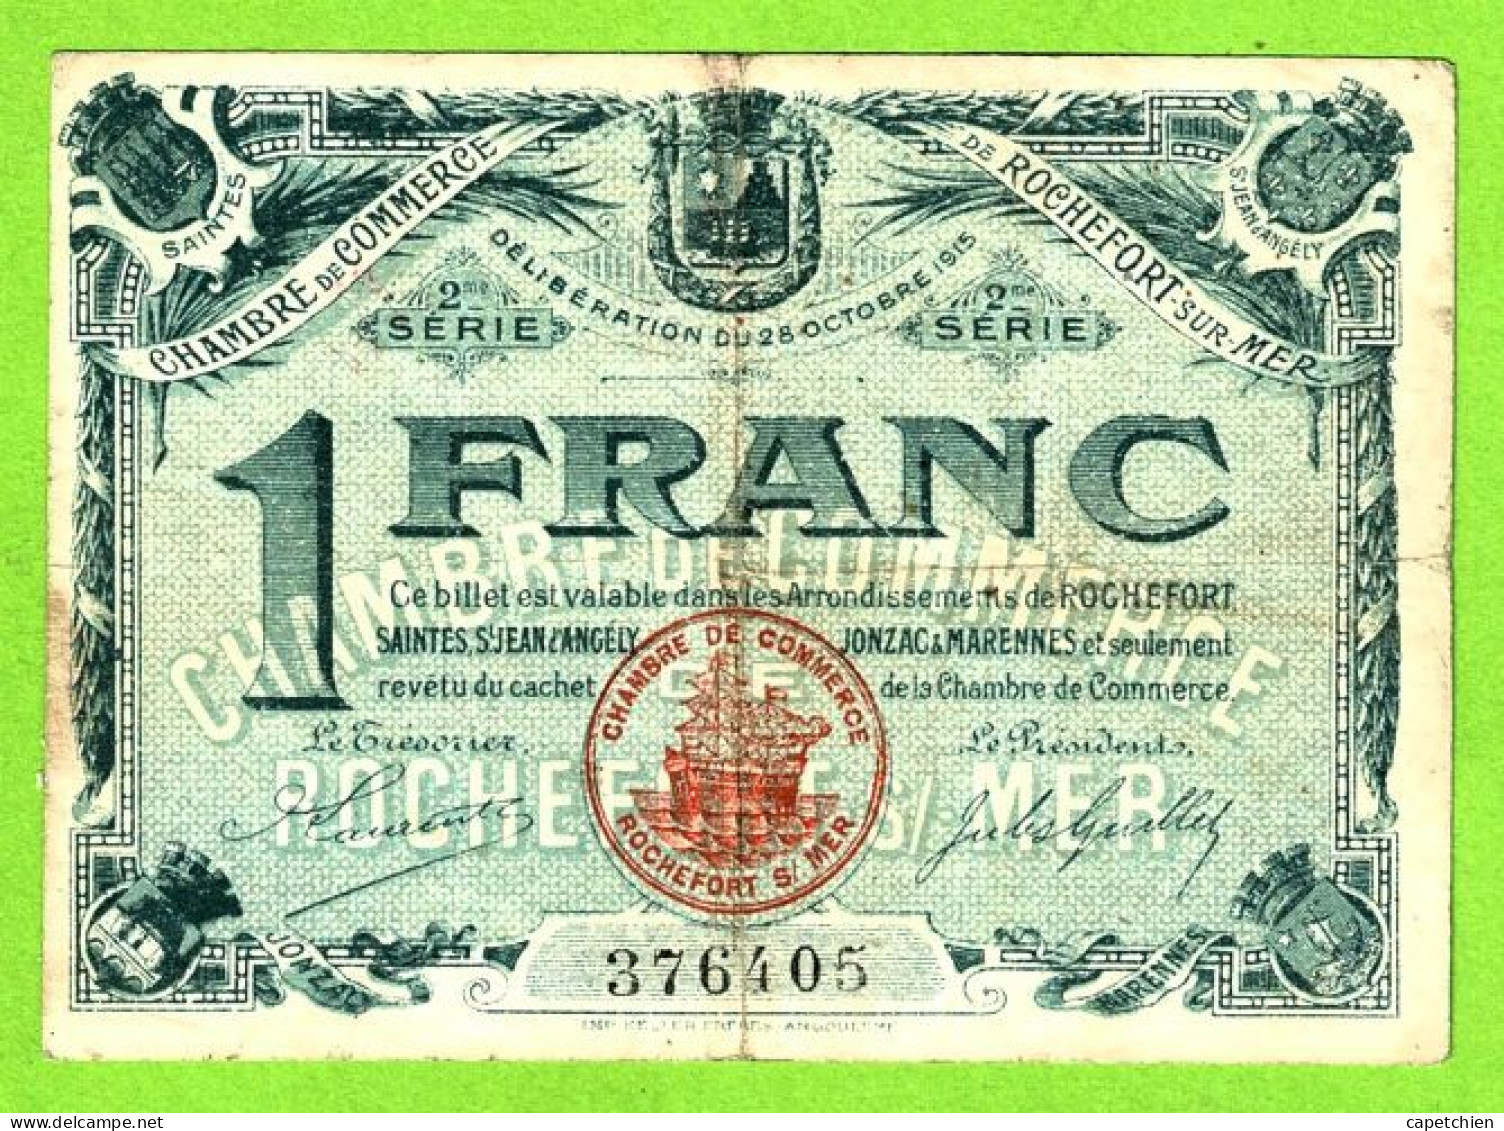 FRANCE/ CHAMBRE De COMMERCE De ROCHEFORT Sur MER/ 1 FRANC / 28 OCTOBRE 1915 / 299877 / 2 Eme SERIE - Handelskammer